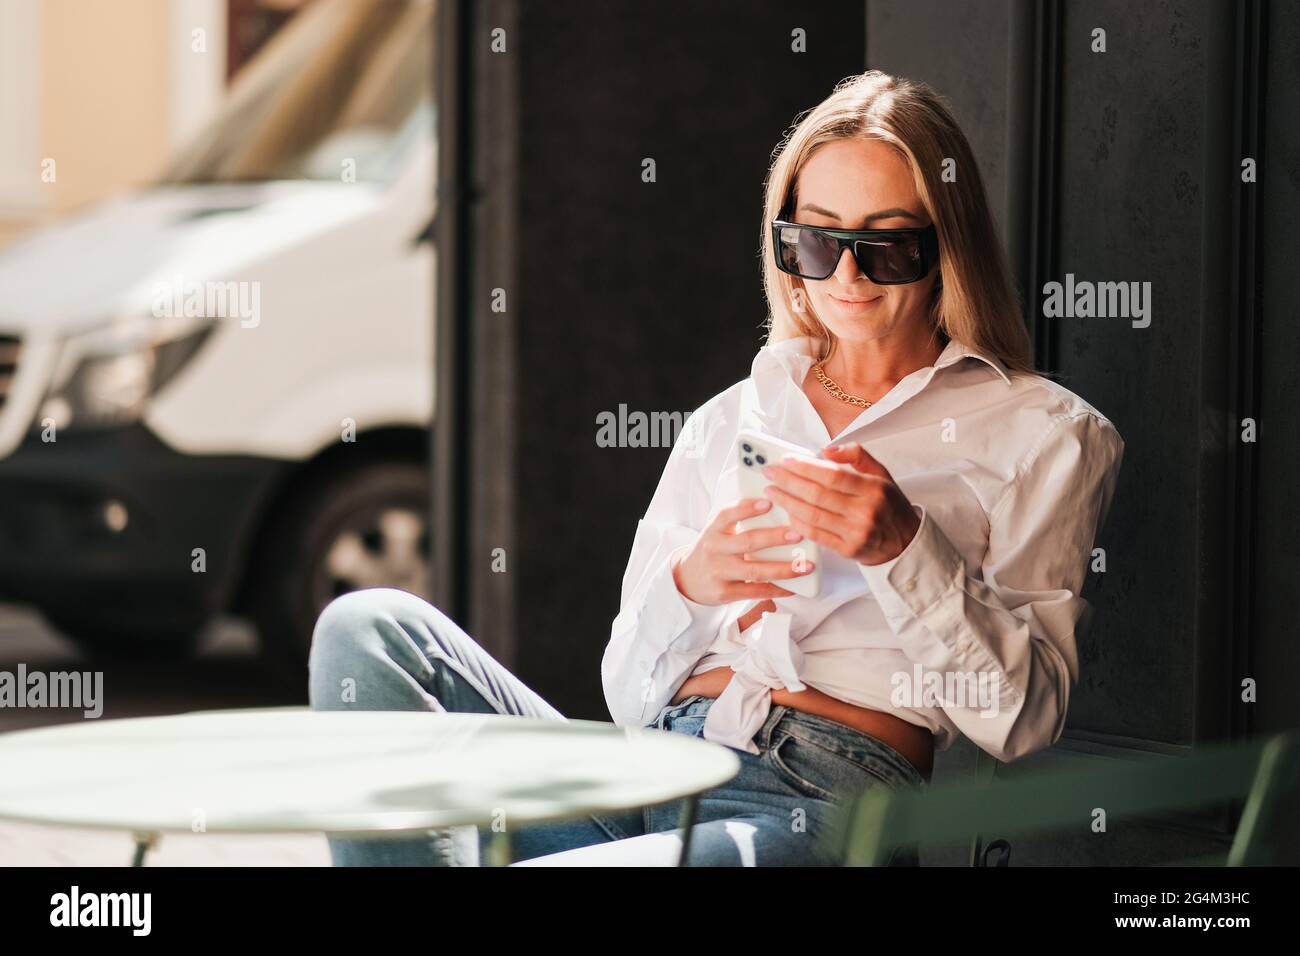 Elegante kaukasische Frau, die an einem Cafe-Tisch sitzt und auf dem Smartphone textet, selbstbewusste Unternehmerin, die eine Sonnenbrille und ein weißes Hemd trägt Stockfoto